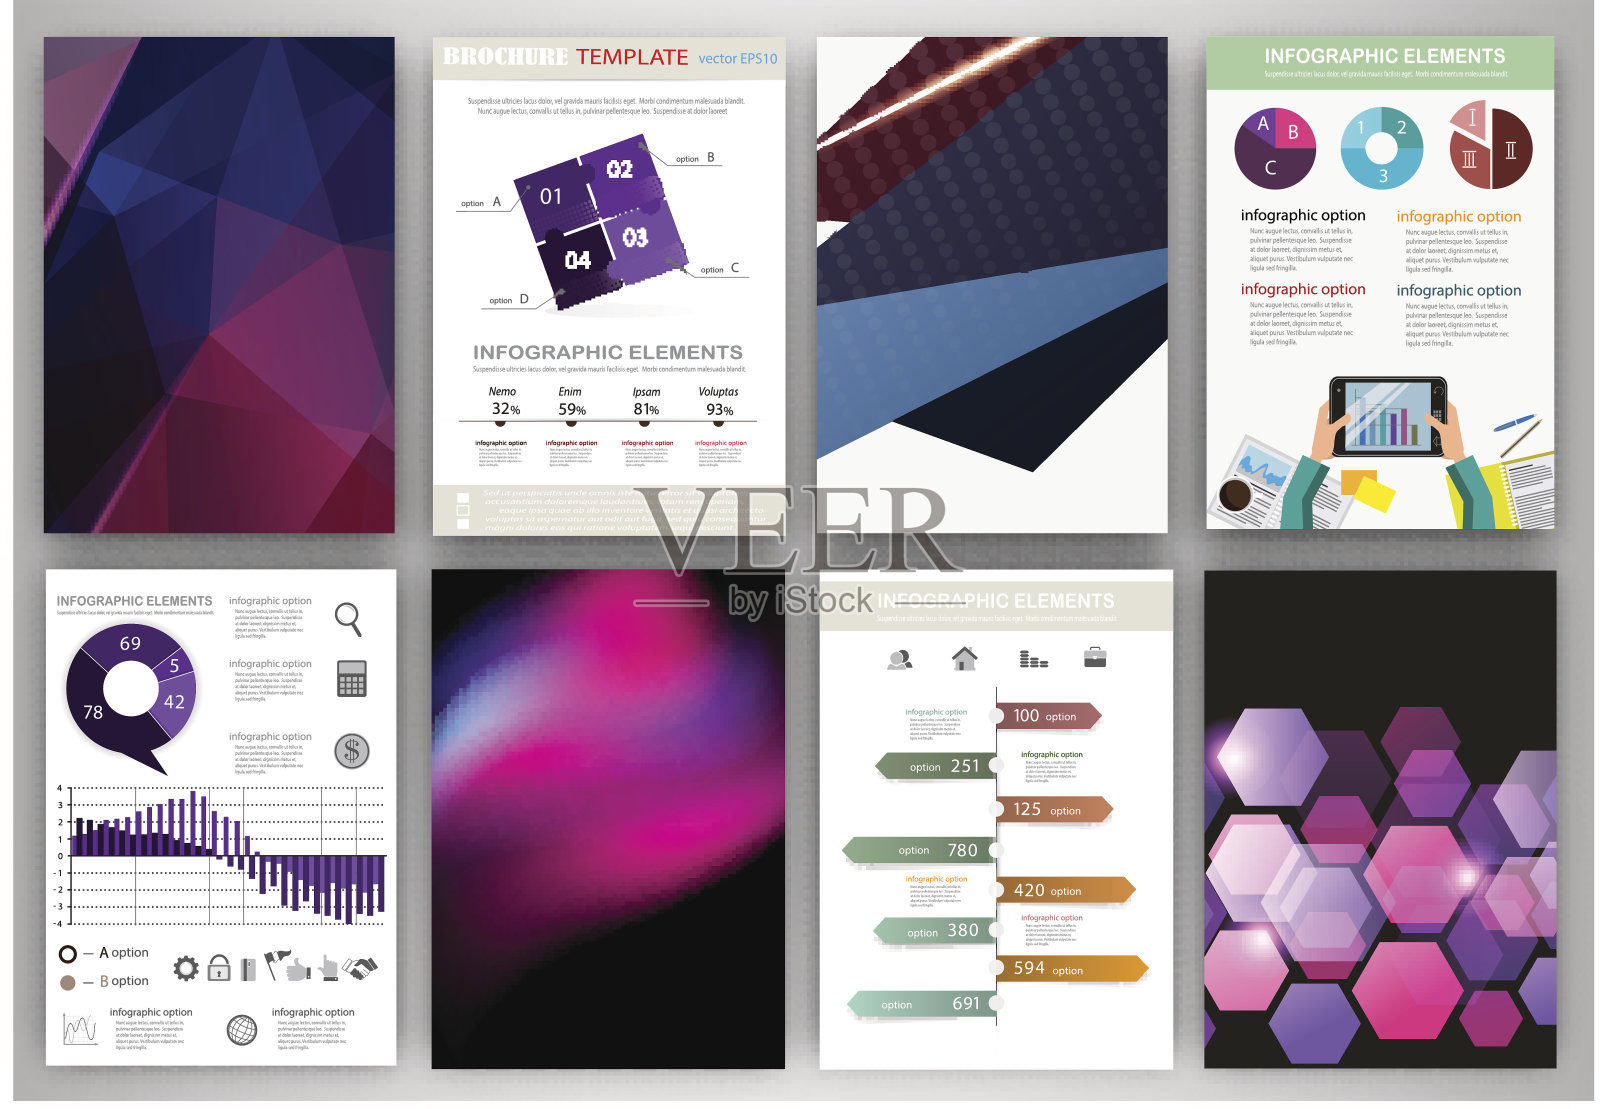 蓝色和紫色的背景和抽象的概念信息图设计模板素材